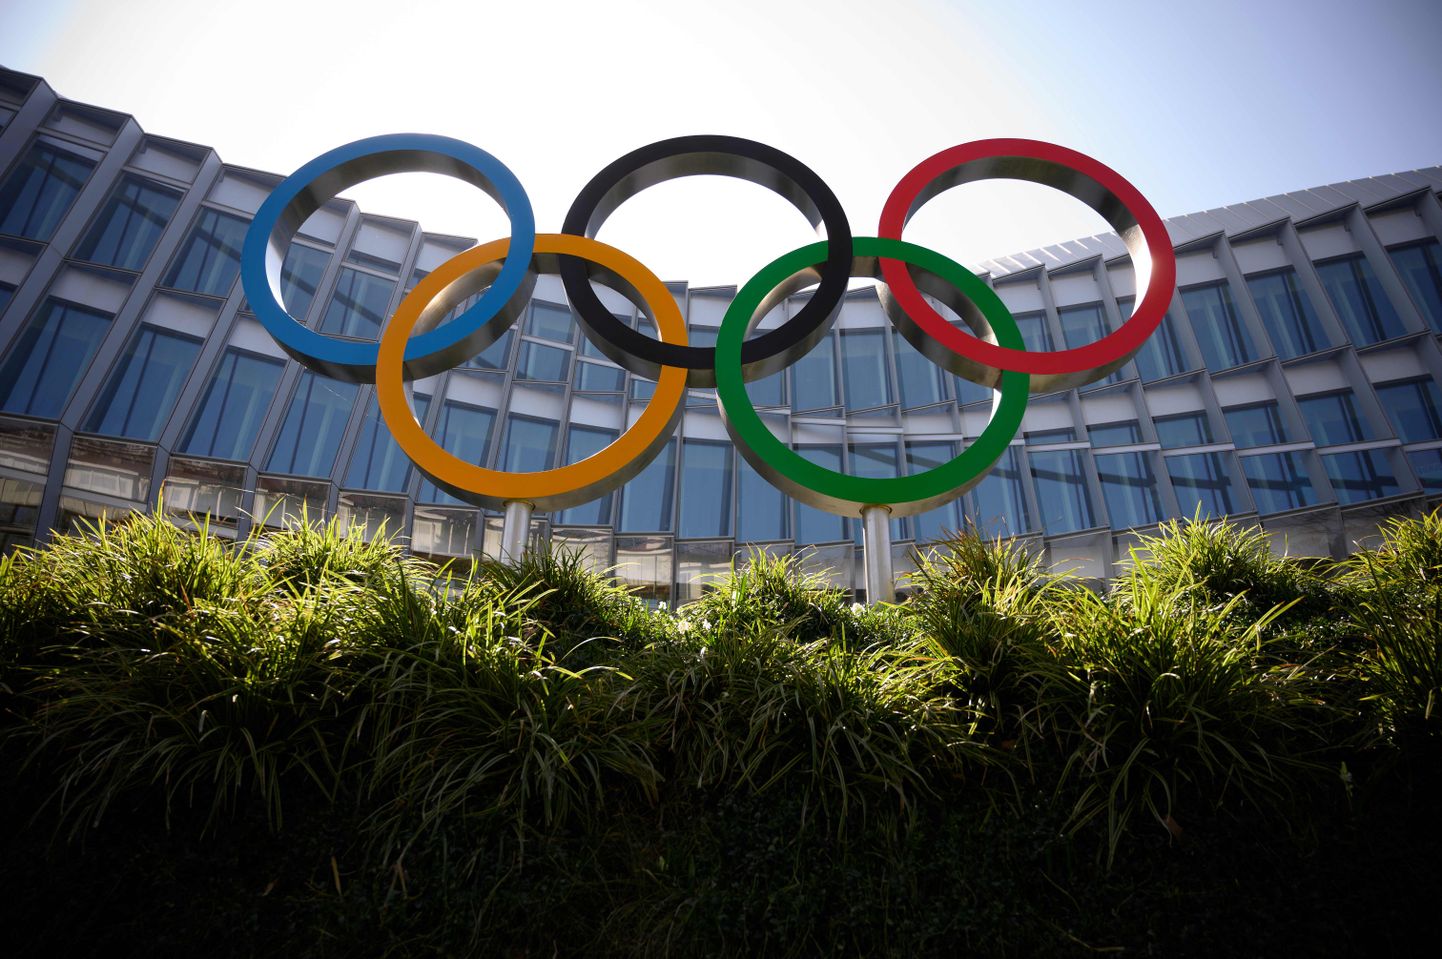 Tokyo mängud peaksid algama 24.juulil 2020. Hispaania Olümpiakomitee president Alejandro Blanco ütles, et ta eelistaks Tokyo olümpiamängude edasilükkamist. Pilt illustreeriv.